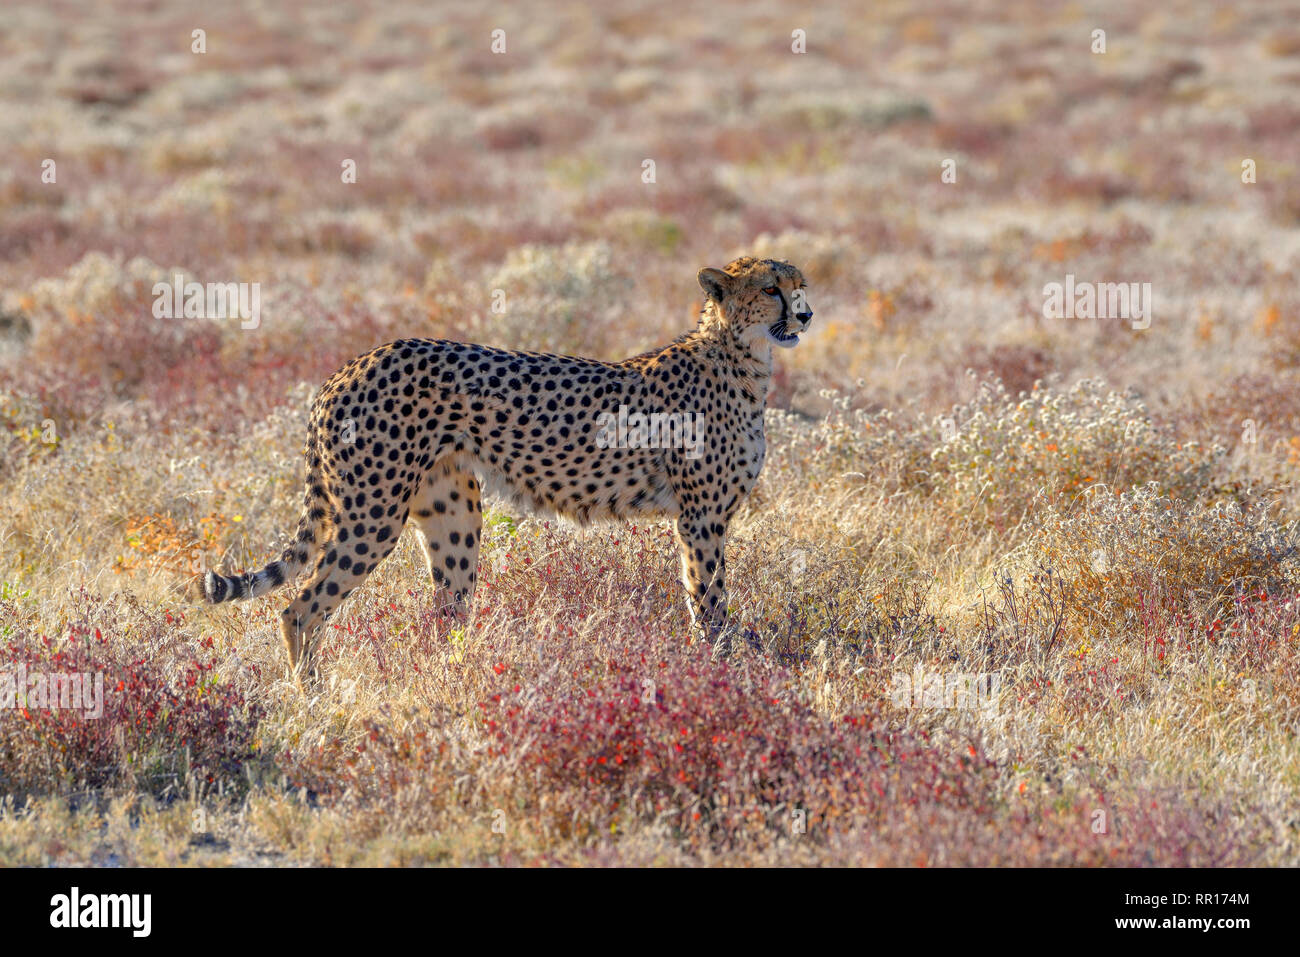 zoology, mammal (mammalia), cheetah (Acinonyx jubatus), male animal, by Namutoni, Etosha National Park, Additional-Rights-Clearance-Info-Not-Available Stock Photo